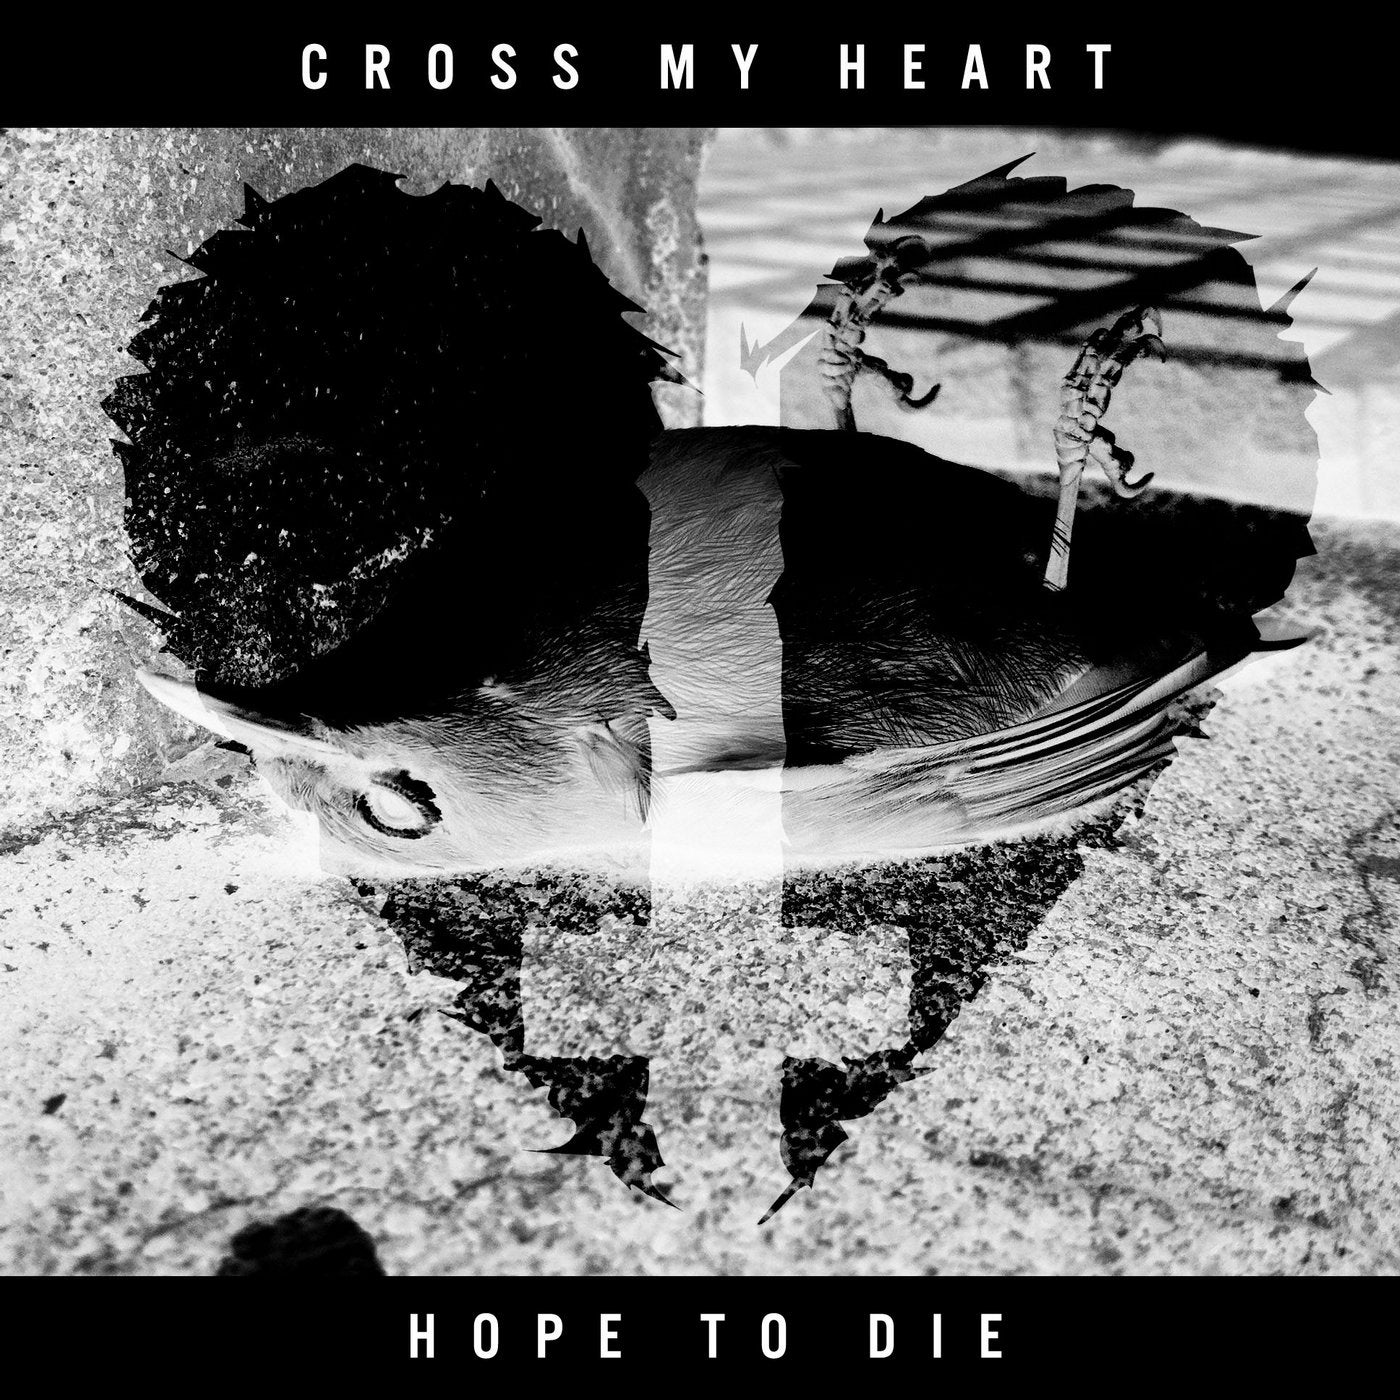 Cross My Heart Hope To Die